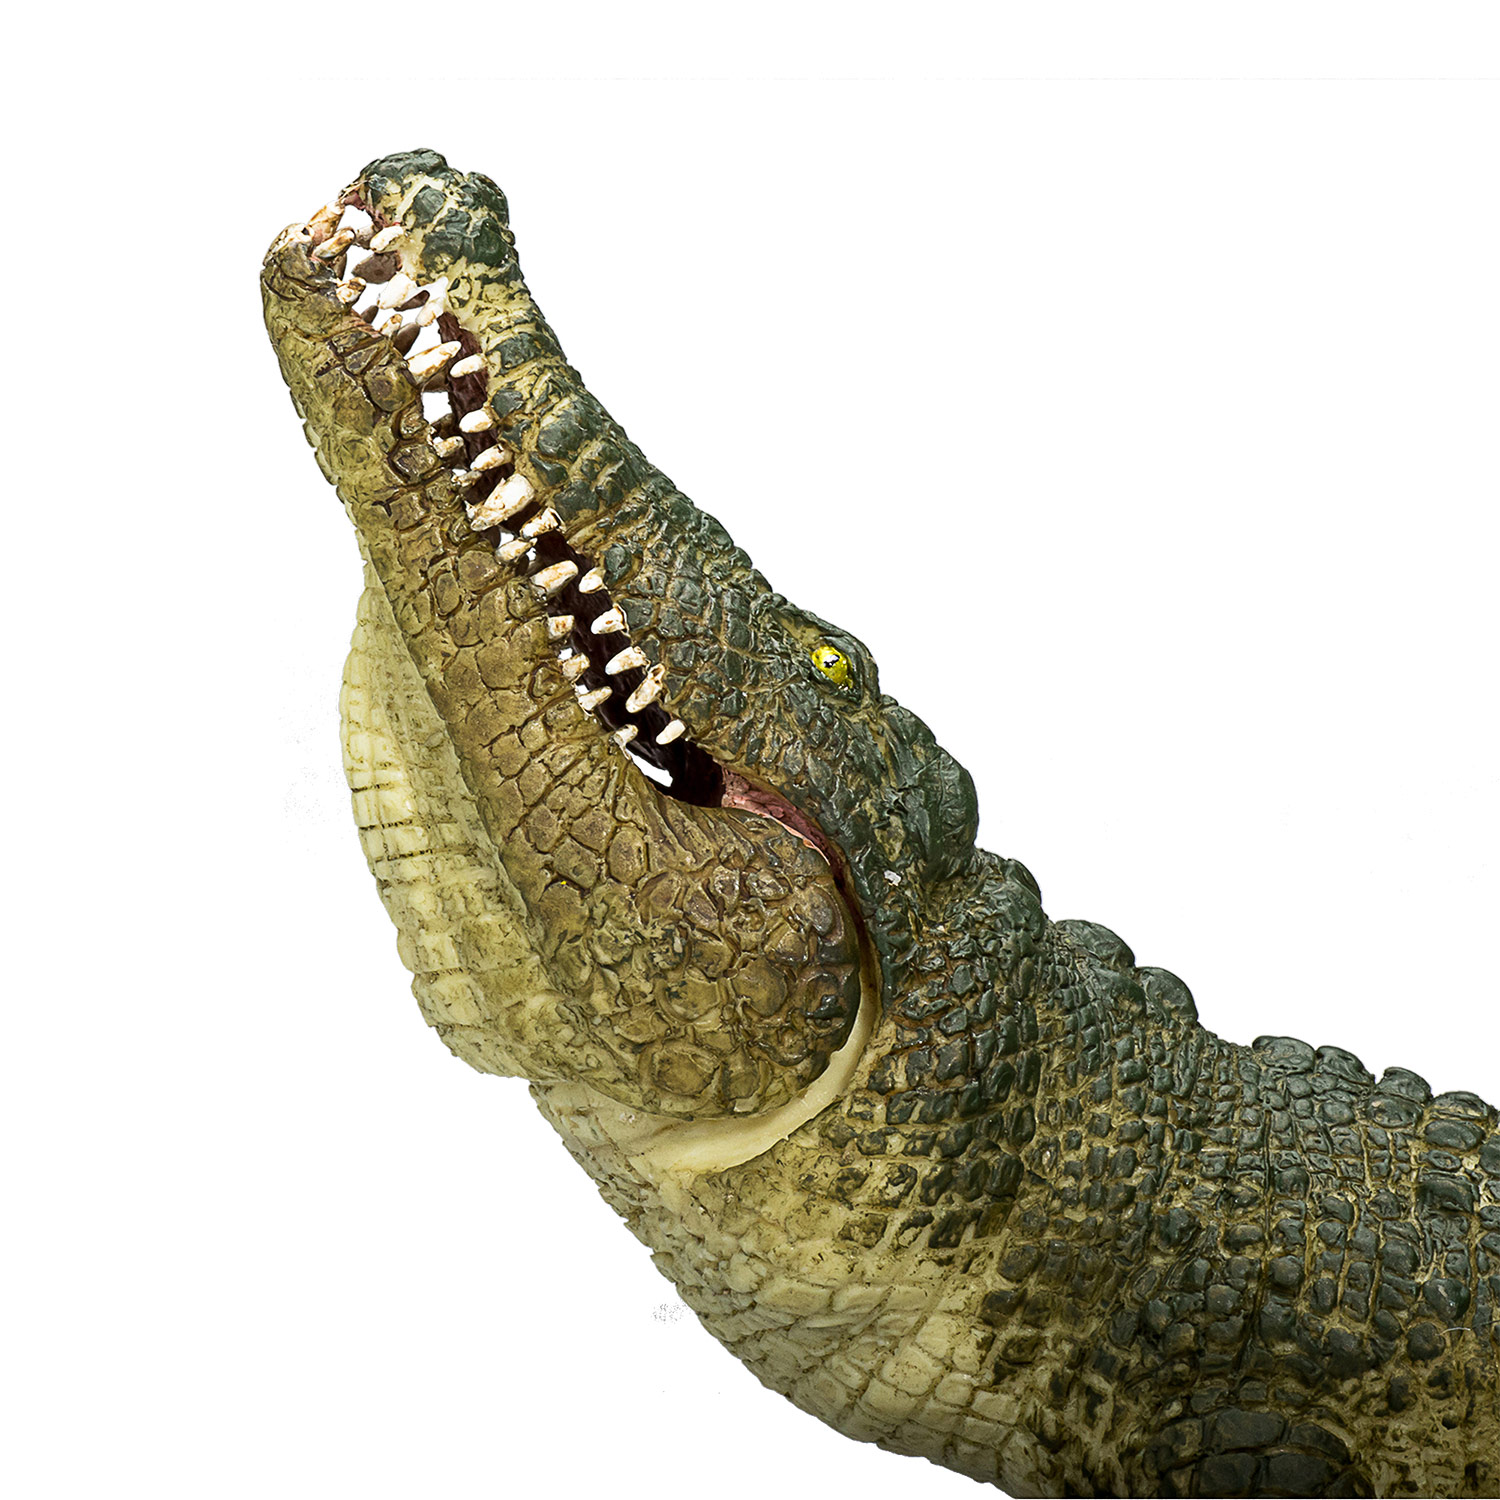 Mojo Wildlife Krokodil mit beweglichem Kiefer - 387162